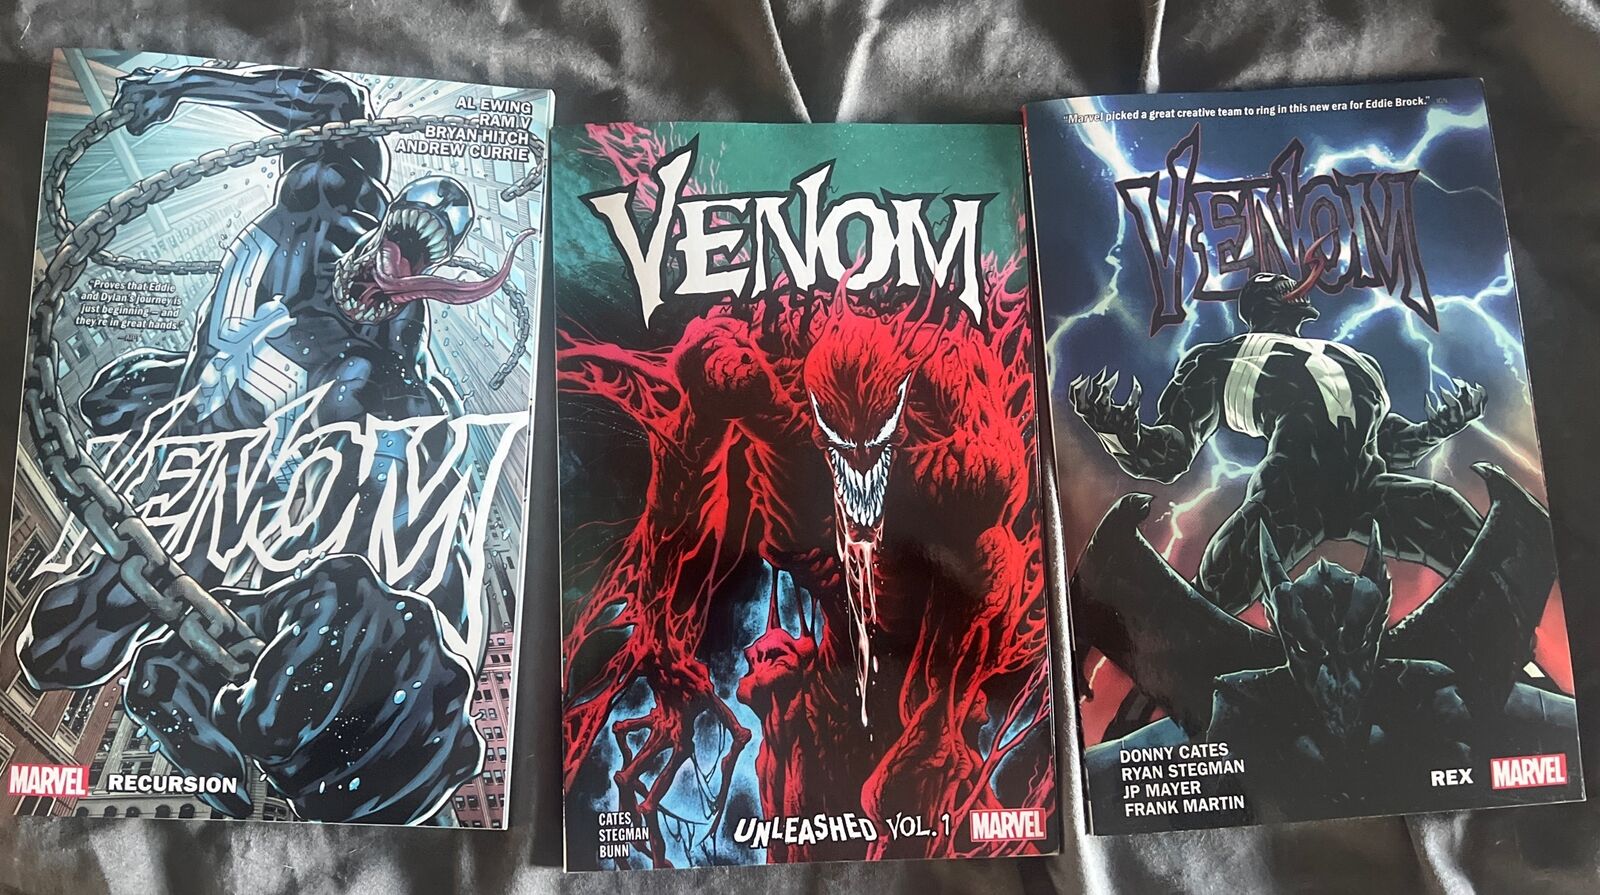 Venom Vol 1 Trade paperbacks 3 For The Price Of 1 Brand New